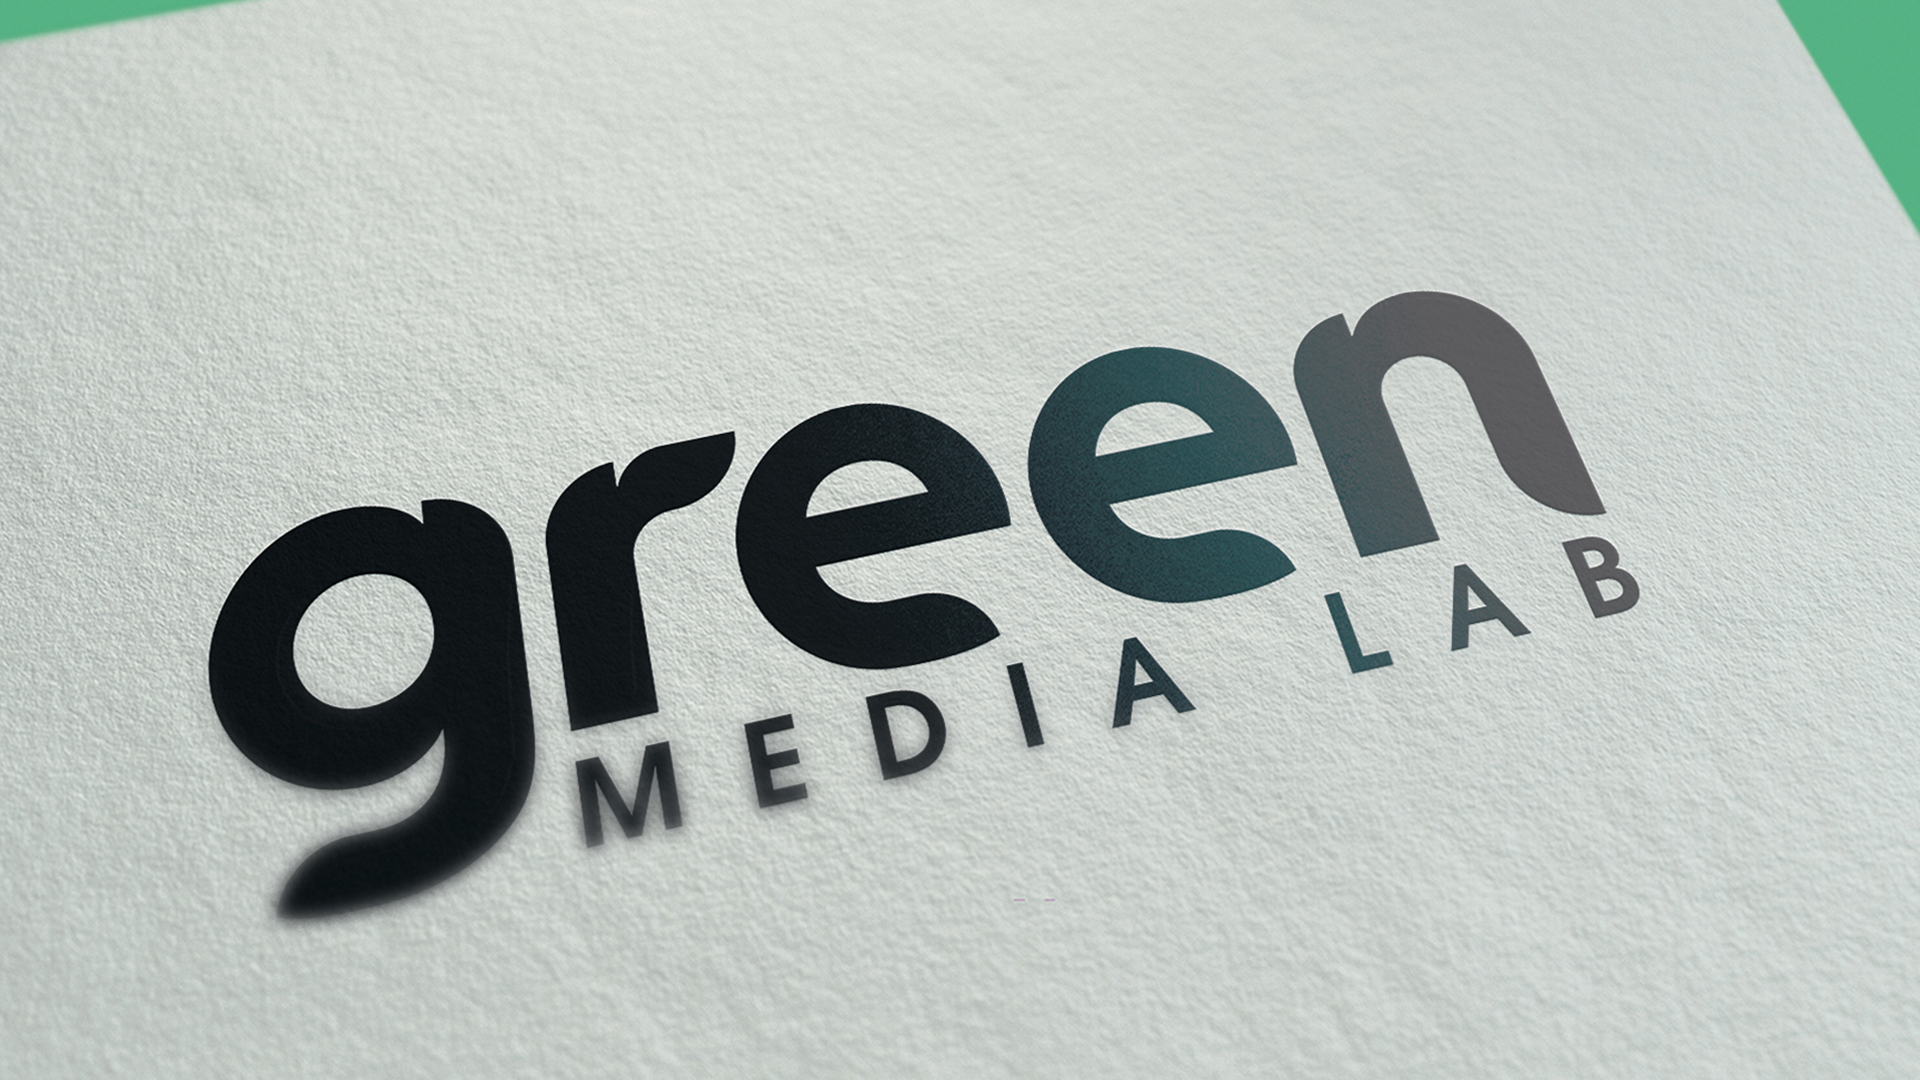 Green Media Lab